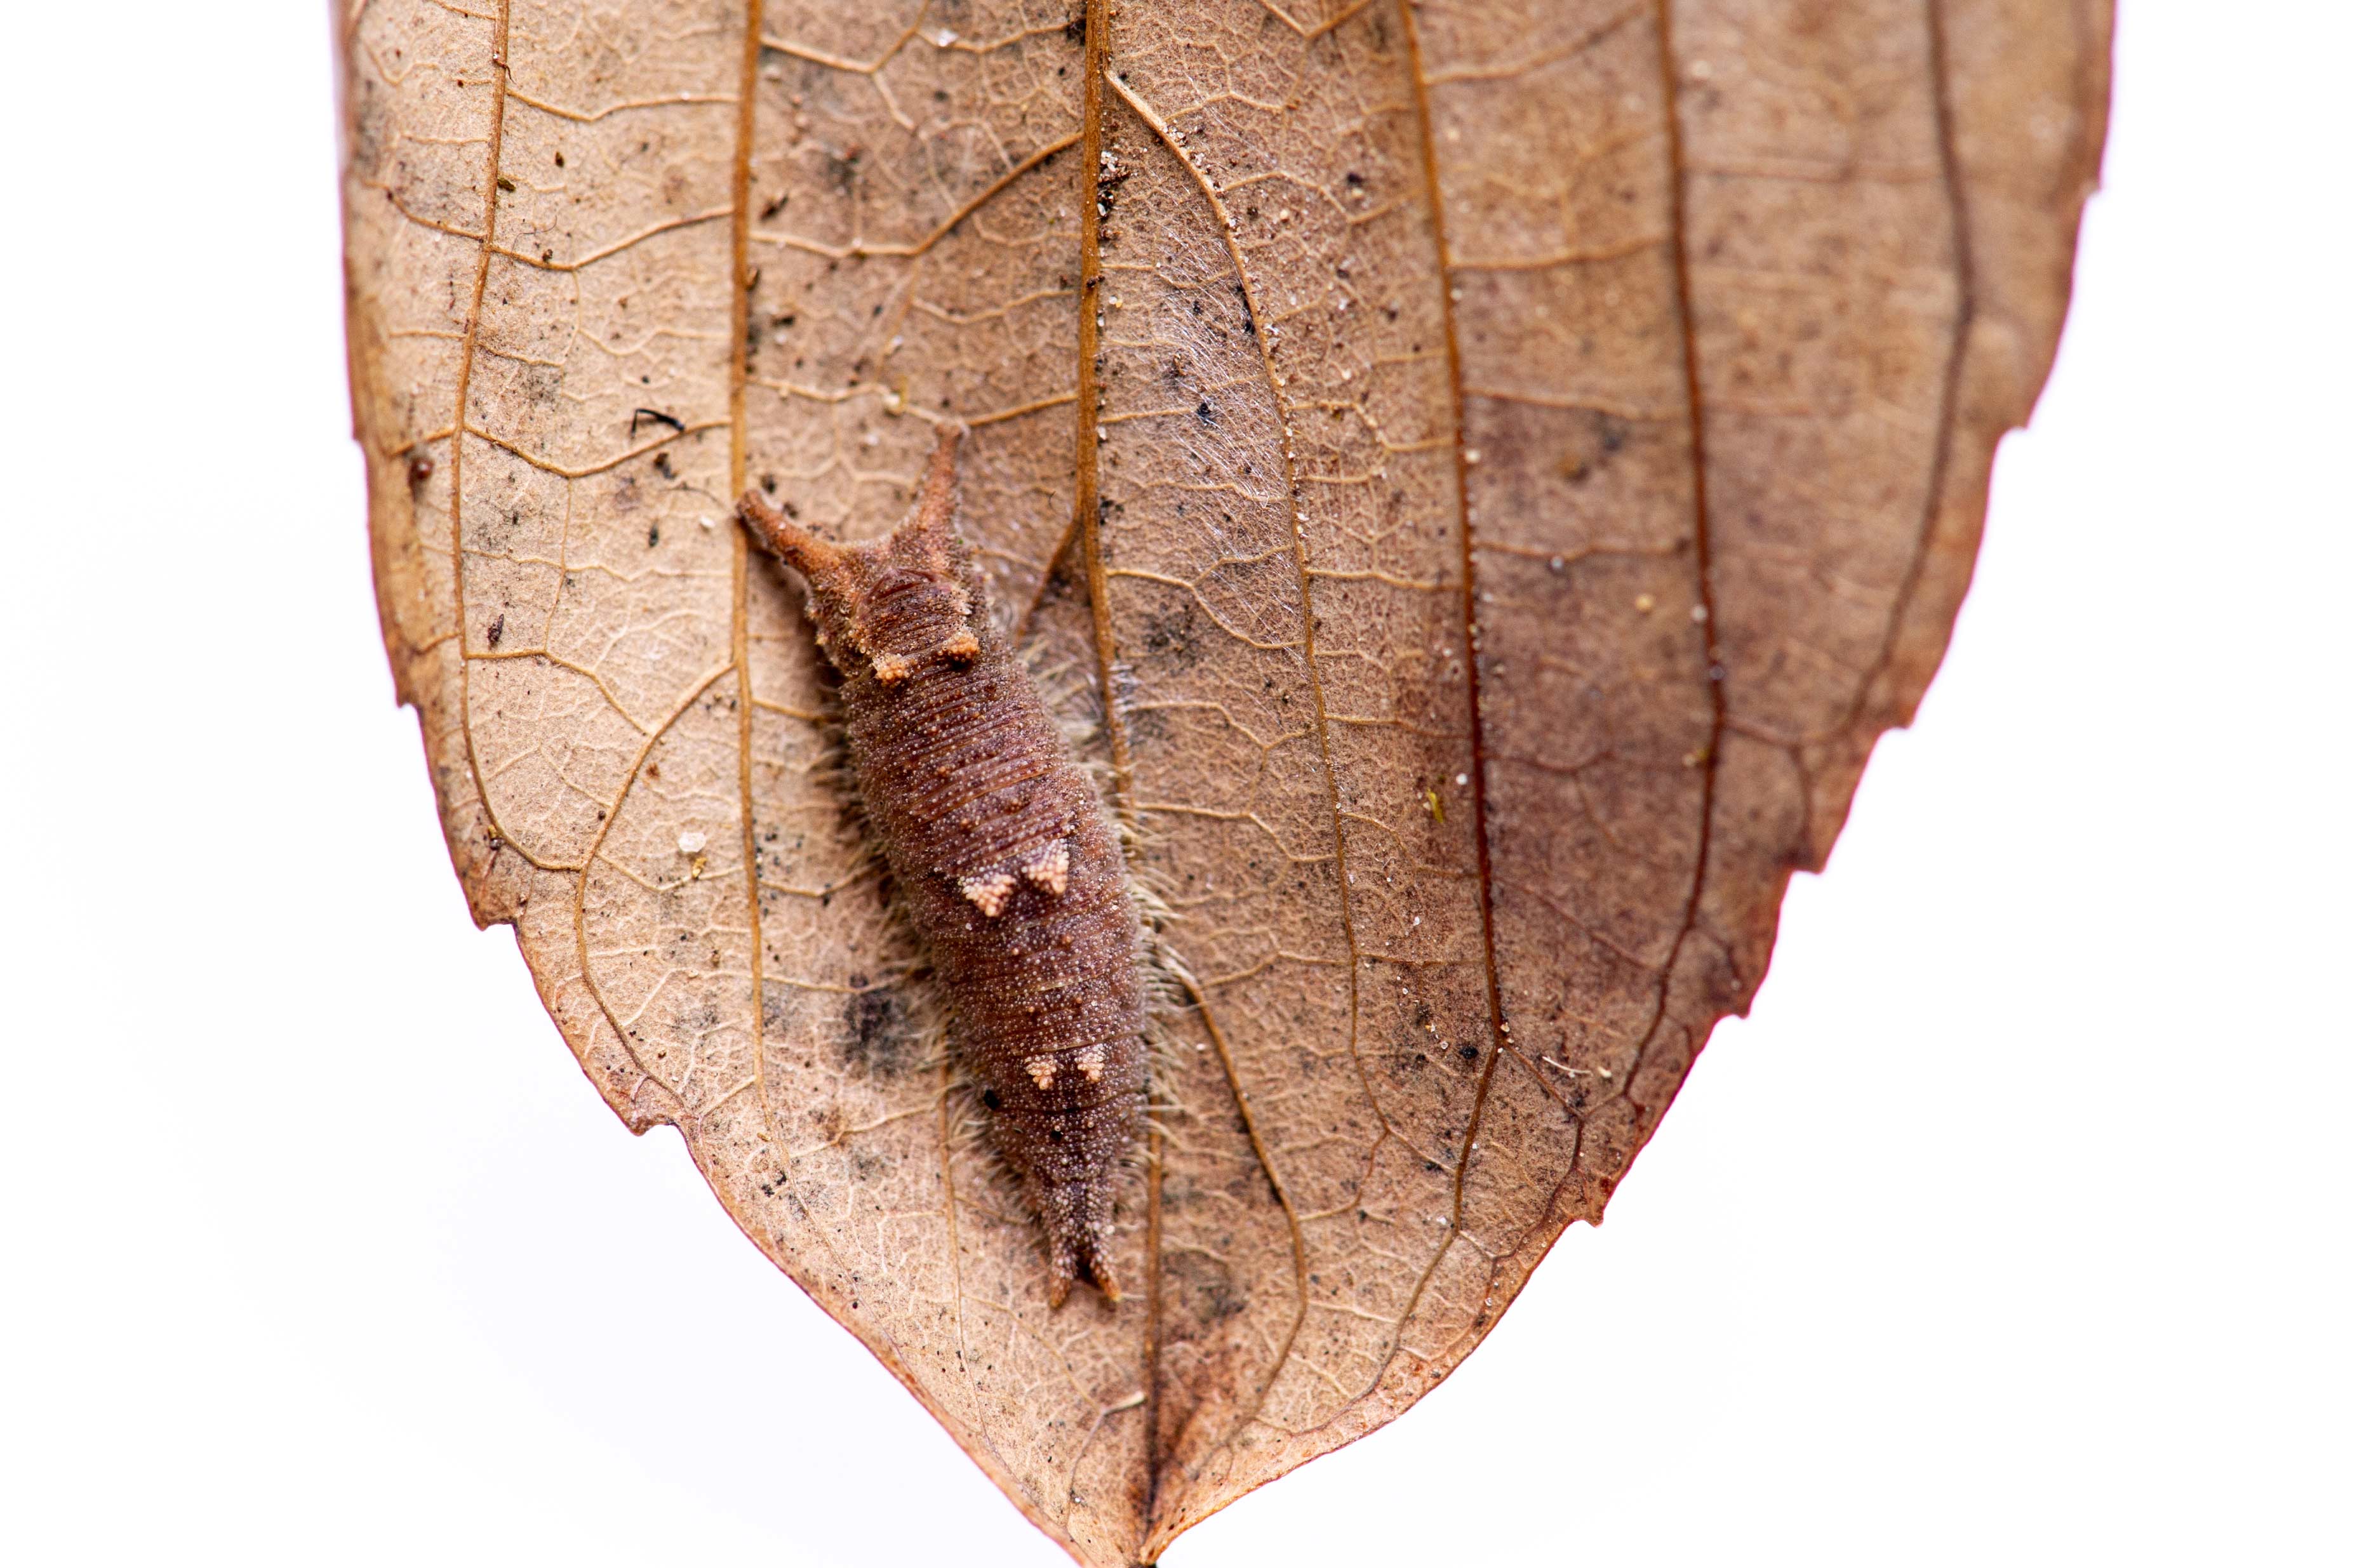 ゴマダラチョウの幼虫の写真